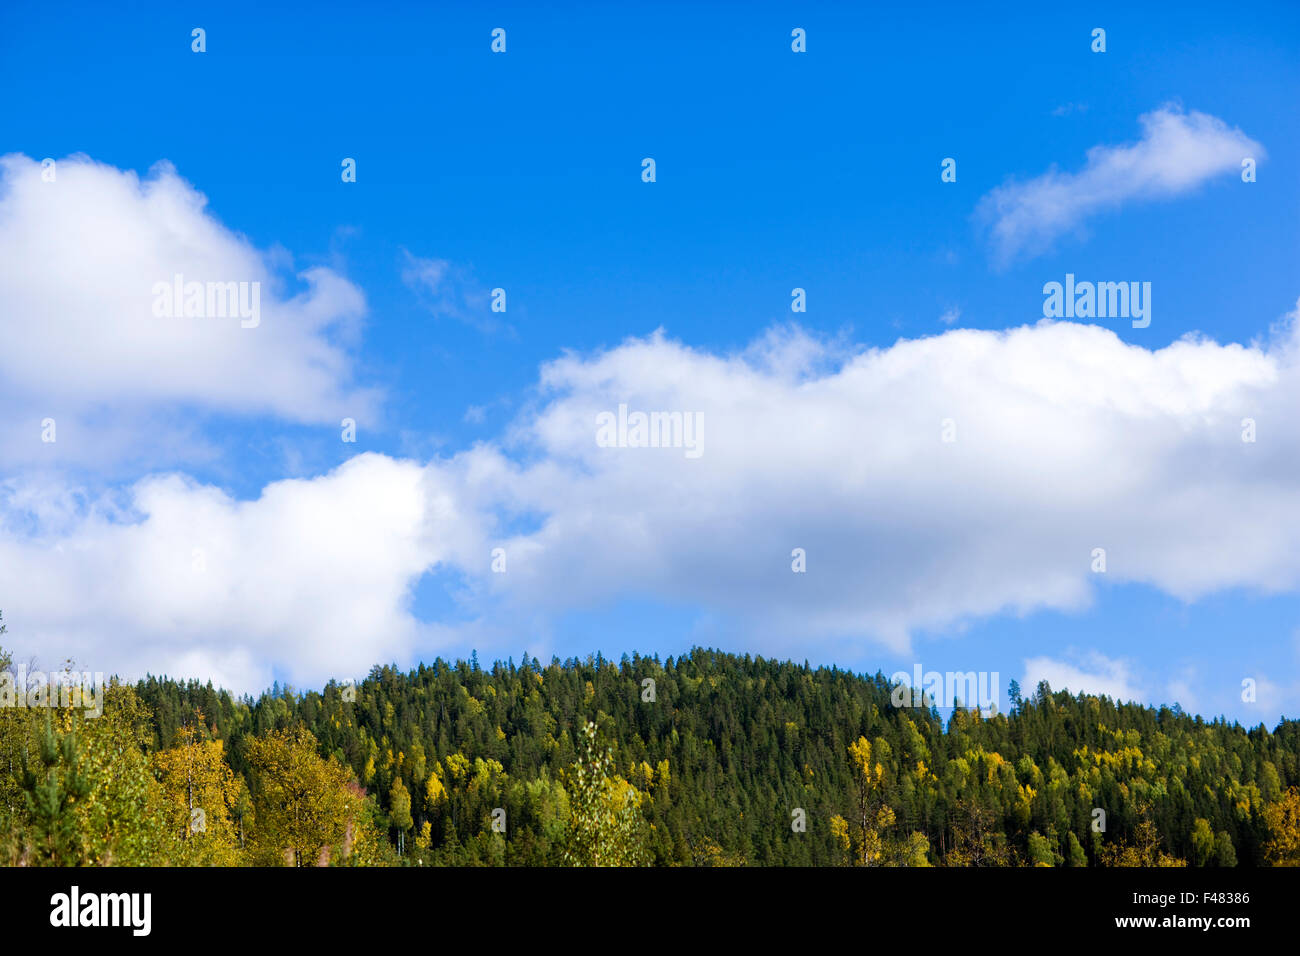 Foresta e nuvole bianche in un cielo blu, Svezia. Foto Stock